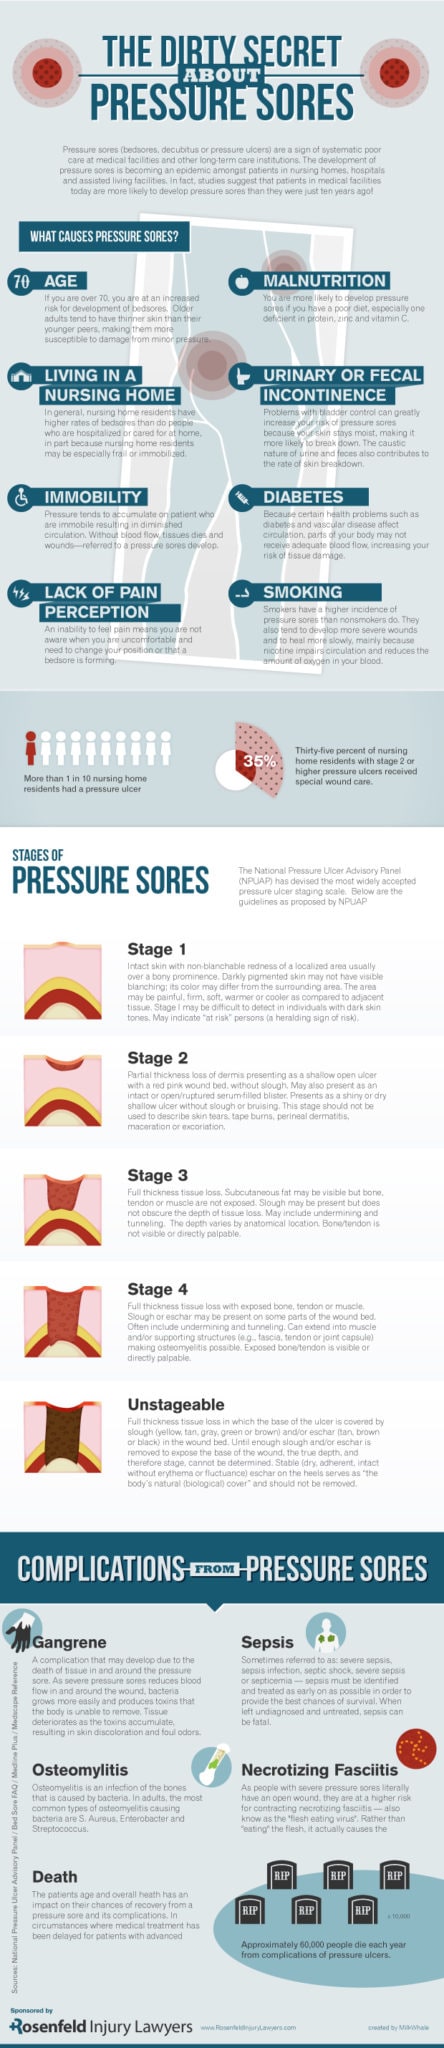 Pressure Sore Infographic